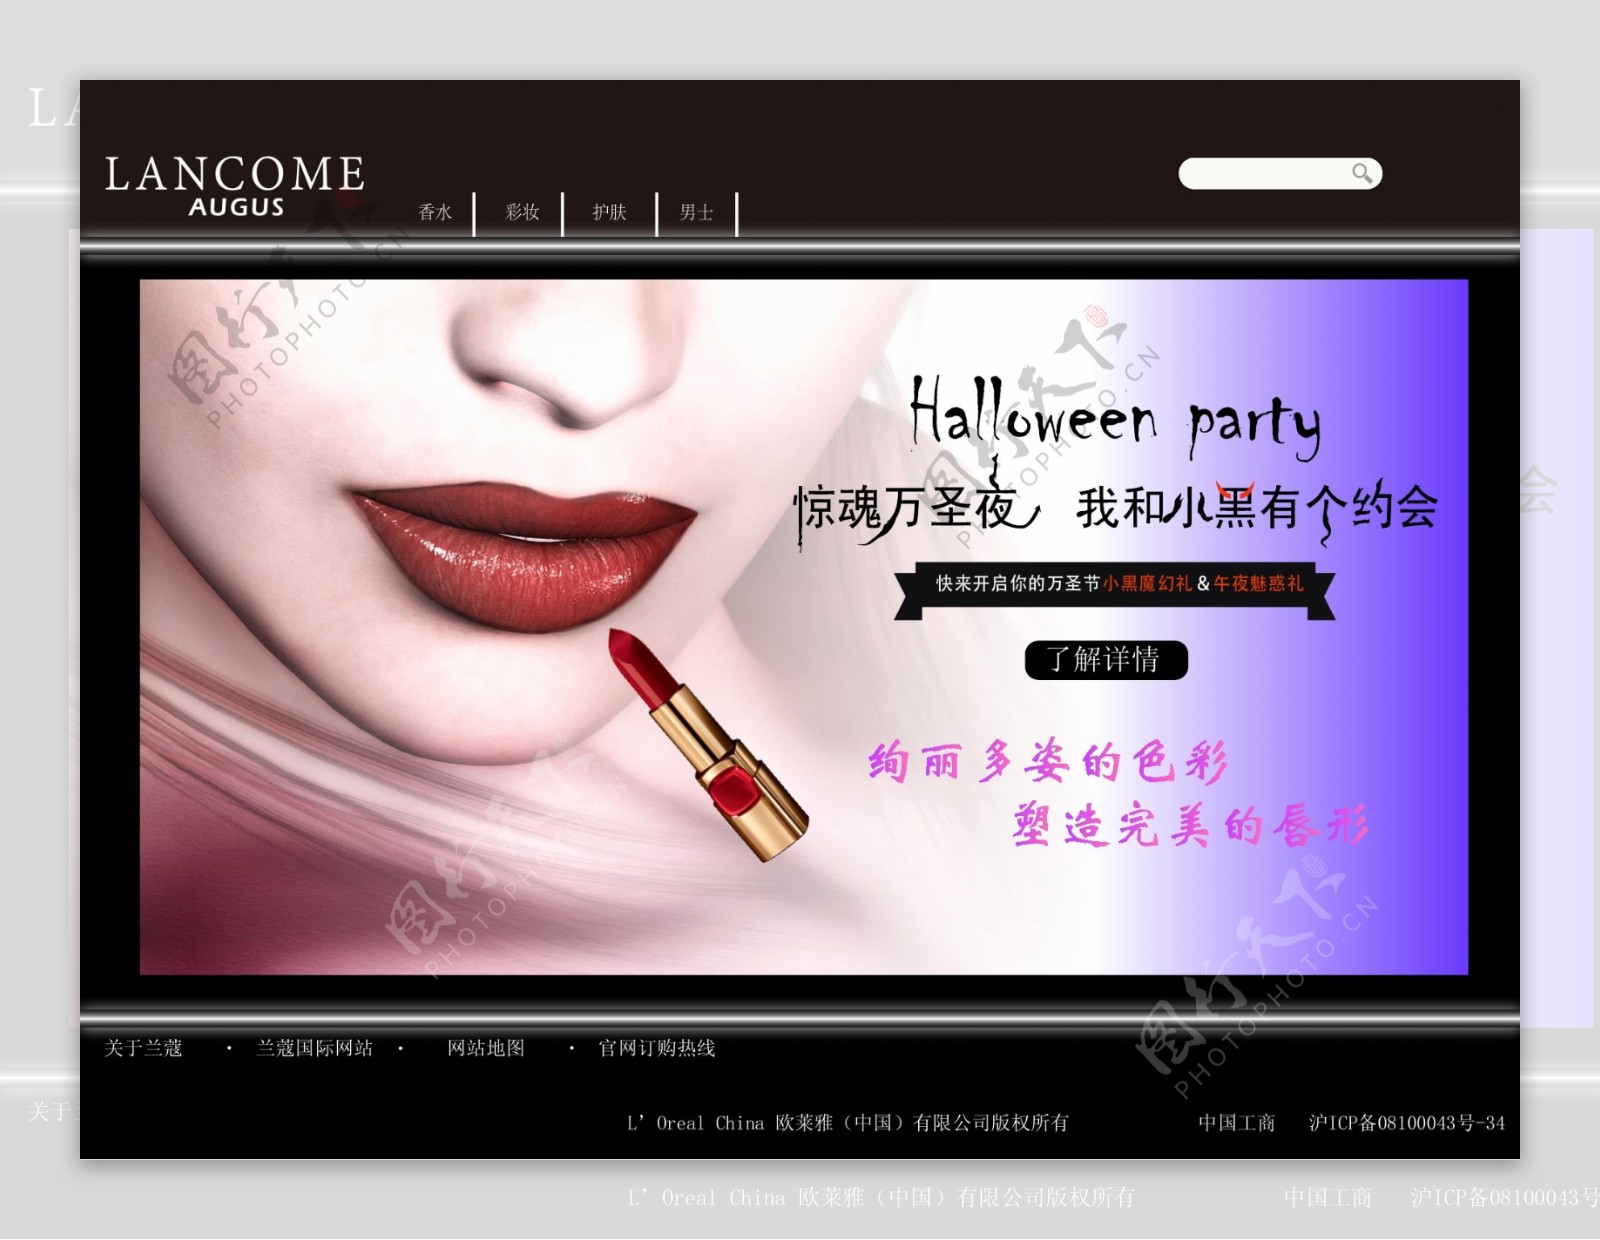 万圣节主题化妆品女性网站首页设计